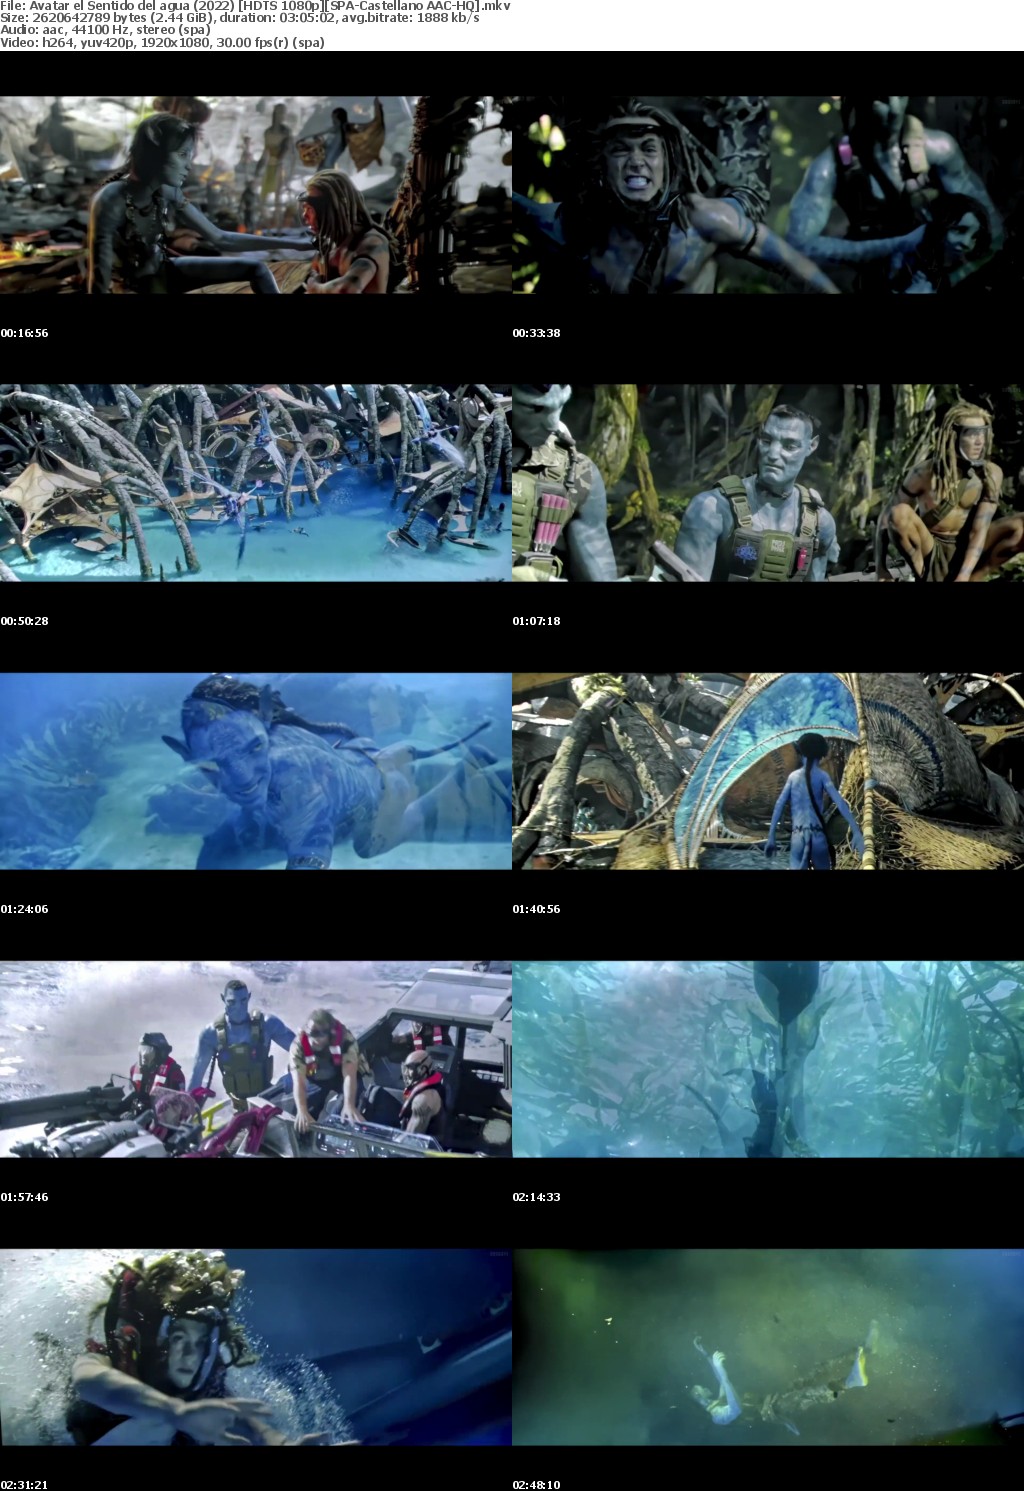 Avatar el Sentido del agua (2022) HDTS 1080p SPA-Castellano AAC-HQ